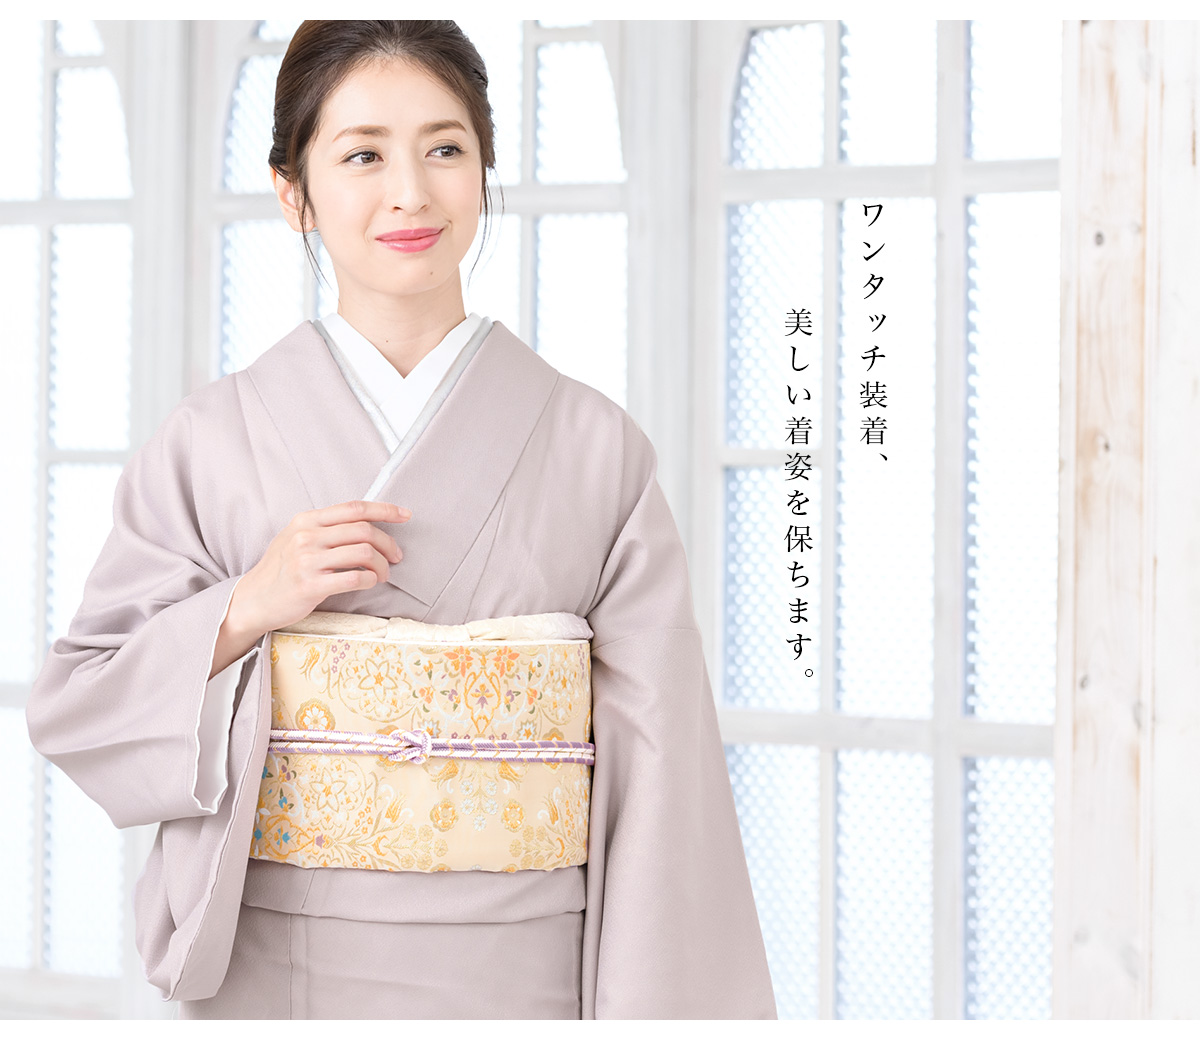  date затянуть Magic ремень сетка кимоно гардеробные аксессуары через год женщина женский длинное нижнее кимоно юката белый ... почтовая доставка 